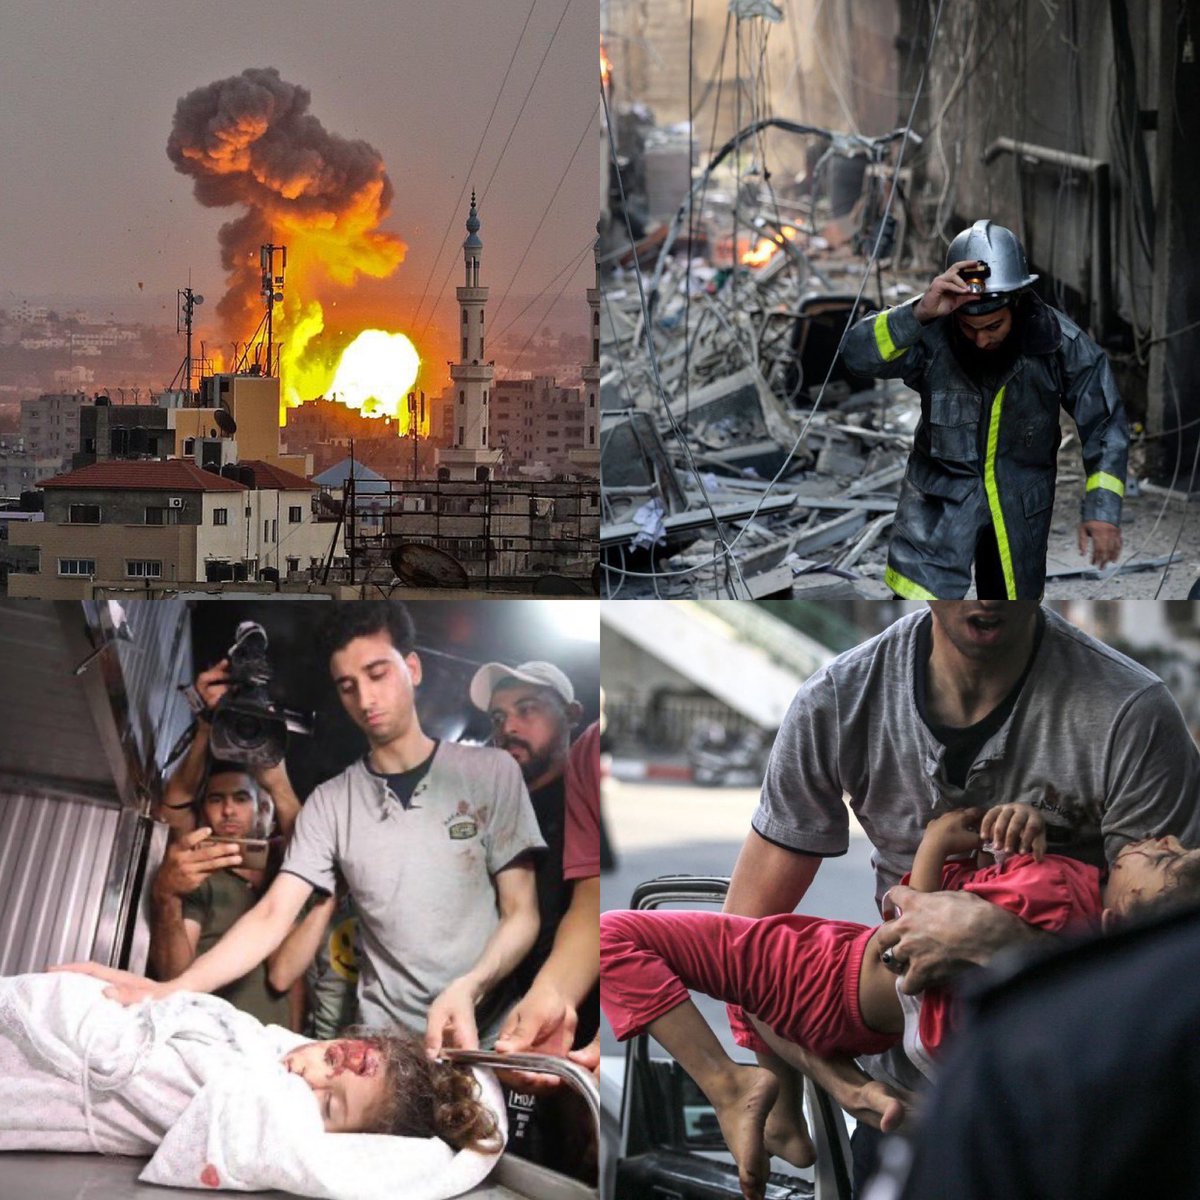 Zalimler için yaşasın Cehennem❗❗❗
 #GazaUnderAttack
#GazzeAtesAltında 
#Filistin